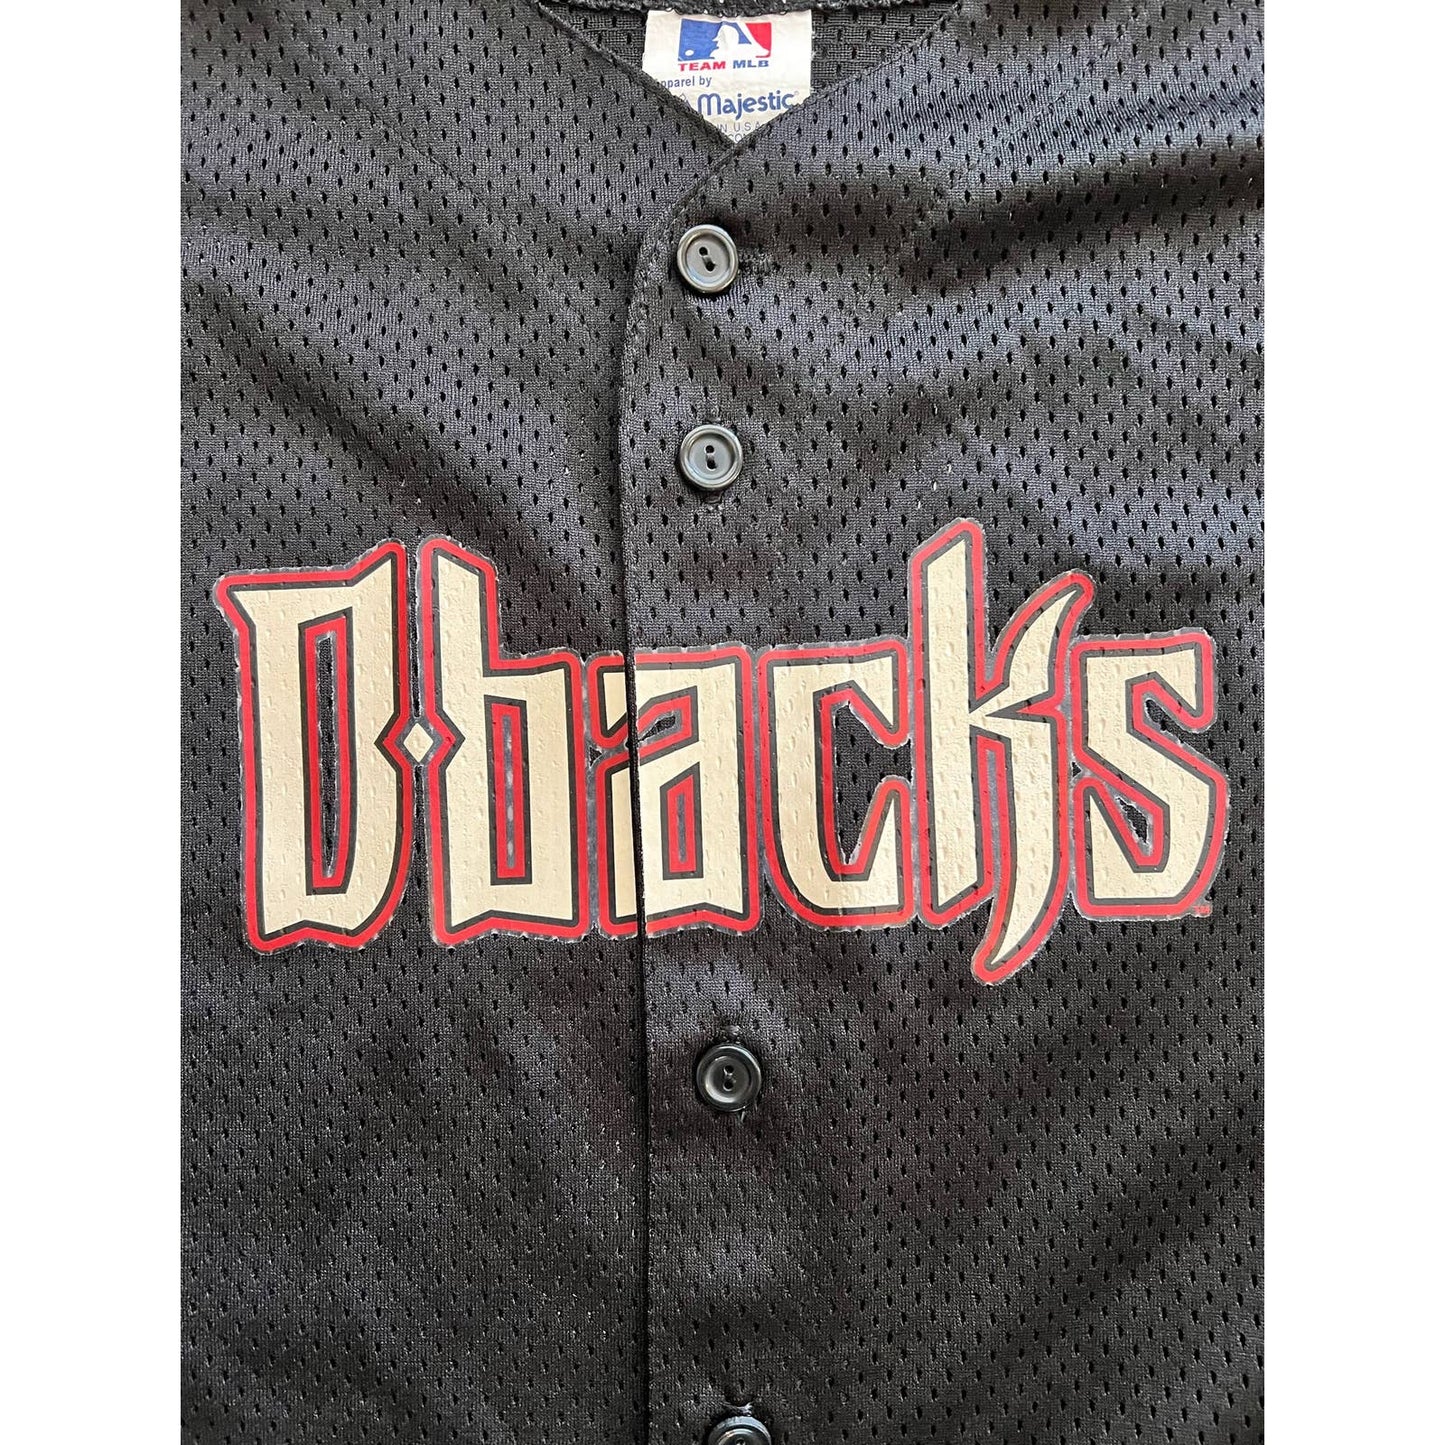 Vintage Diamondbacks Jersey majestic d-backs